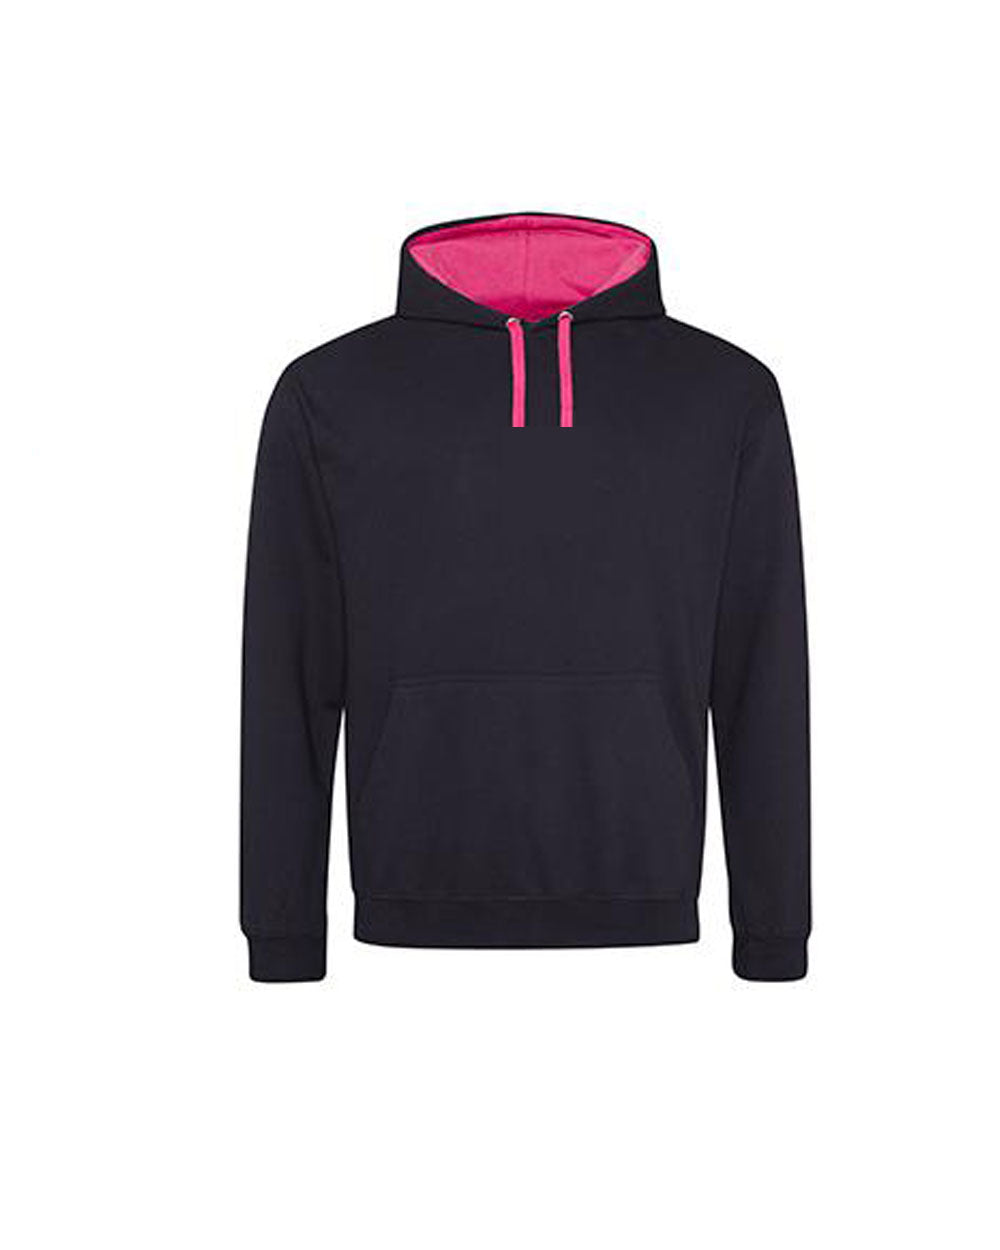 Green Hills Design 3 Hooded Sweatshirt, pink